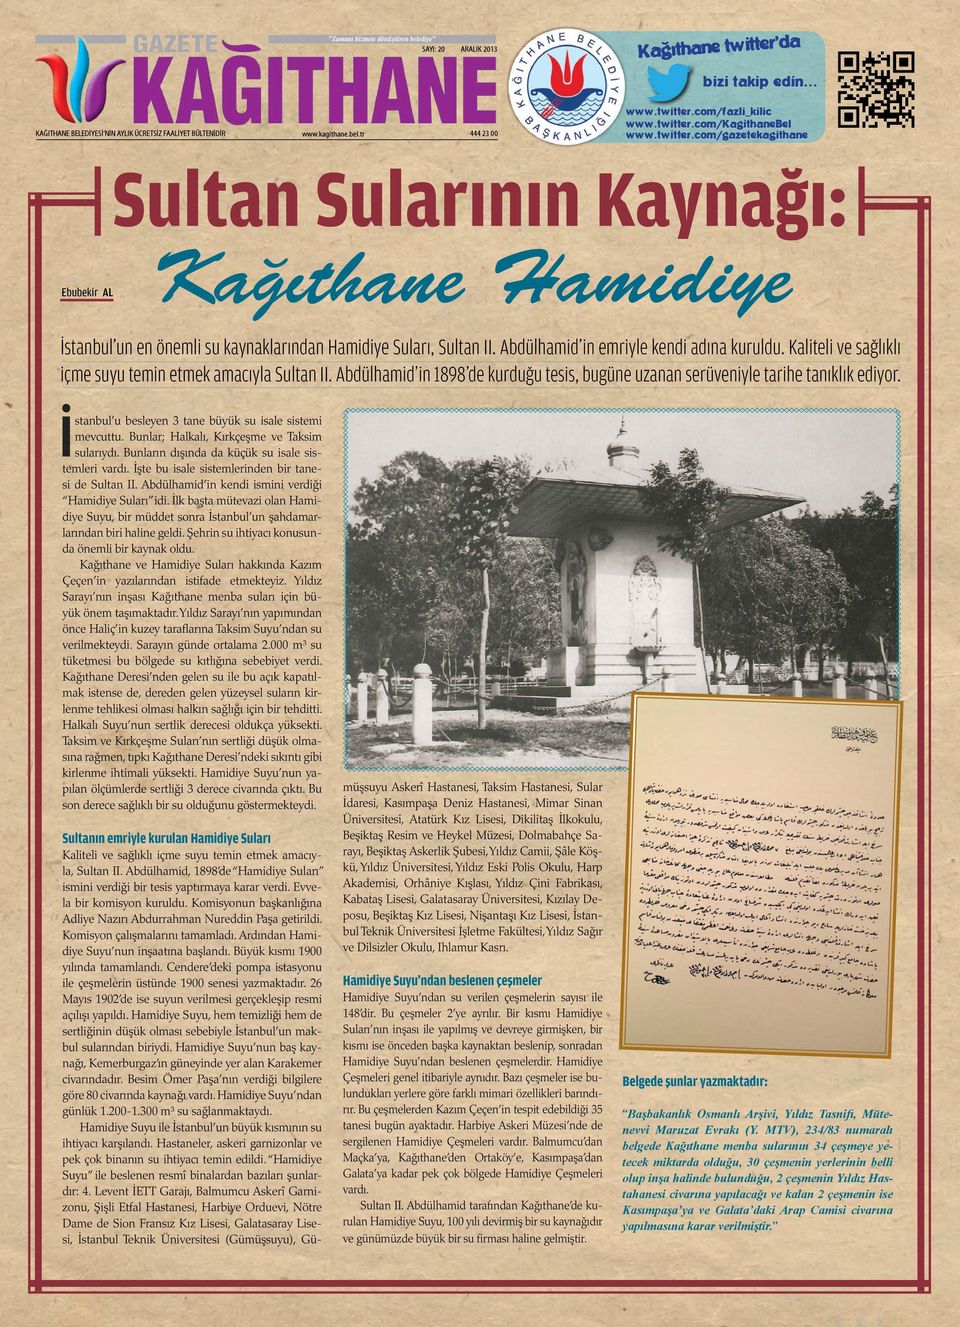 Kaliteli ve sağlıklı içme suyu temin etmek amacıyla Sultan II. Abdülhamid in 1898 de kurduğu tesis, bugüne uzanan serüveniyle tarihe tanıklık ediyor.